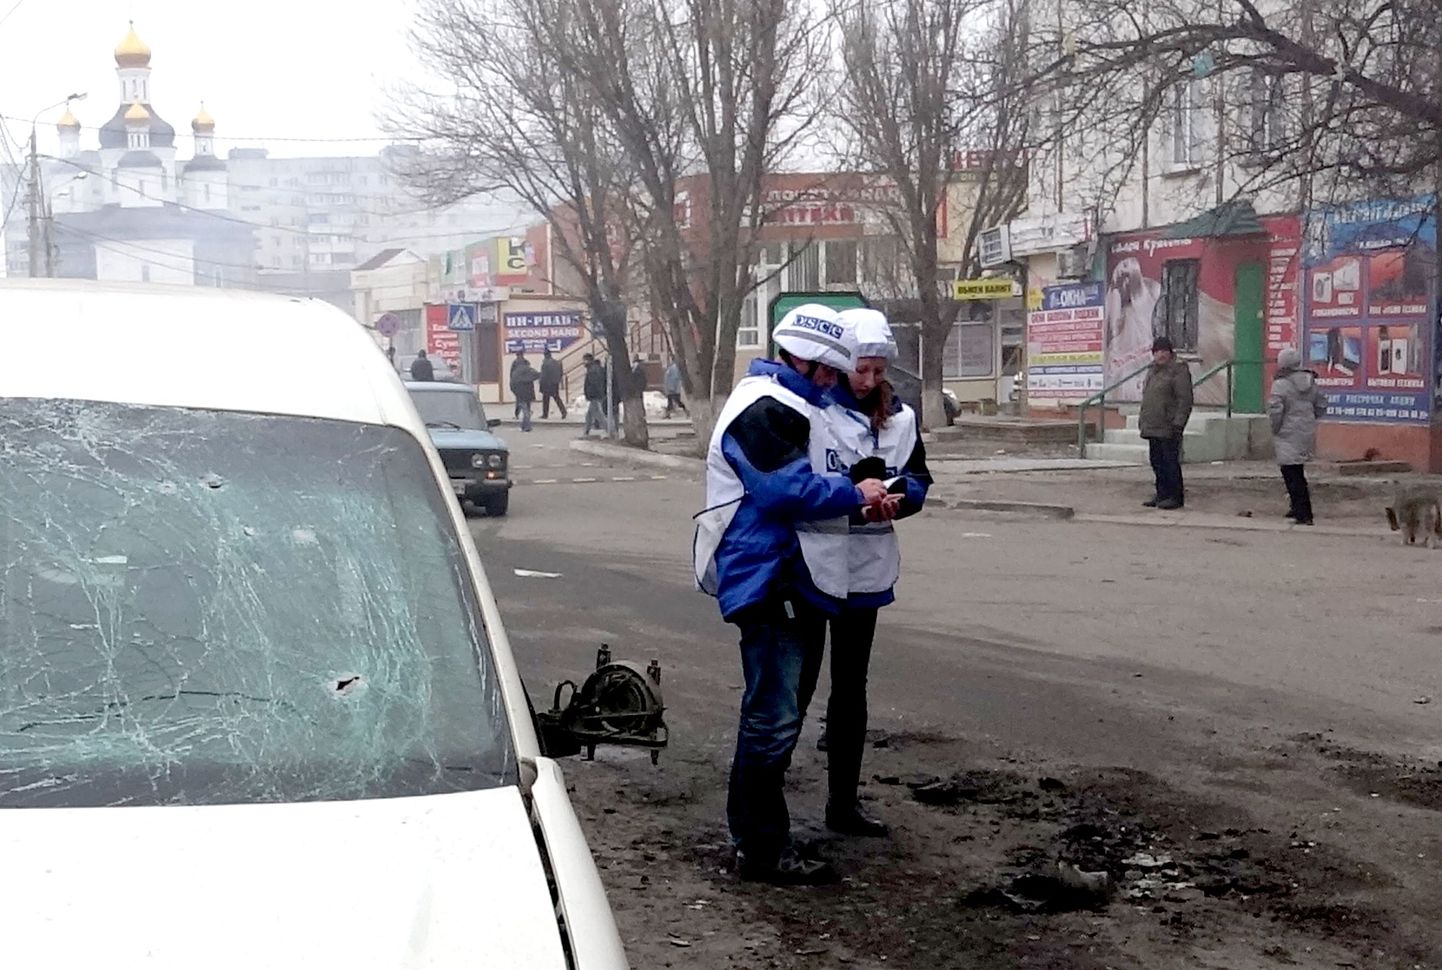 OSCE vaatlejad Mariupolis, kus hukkus vähemalt 30 inimest